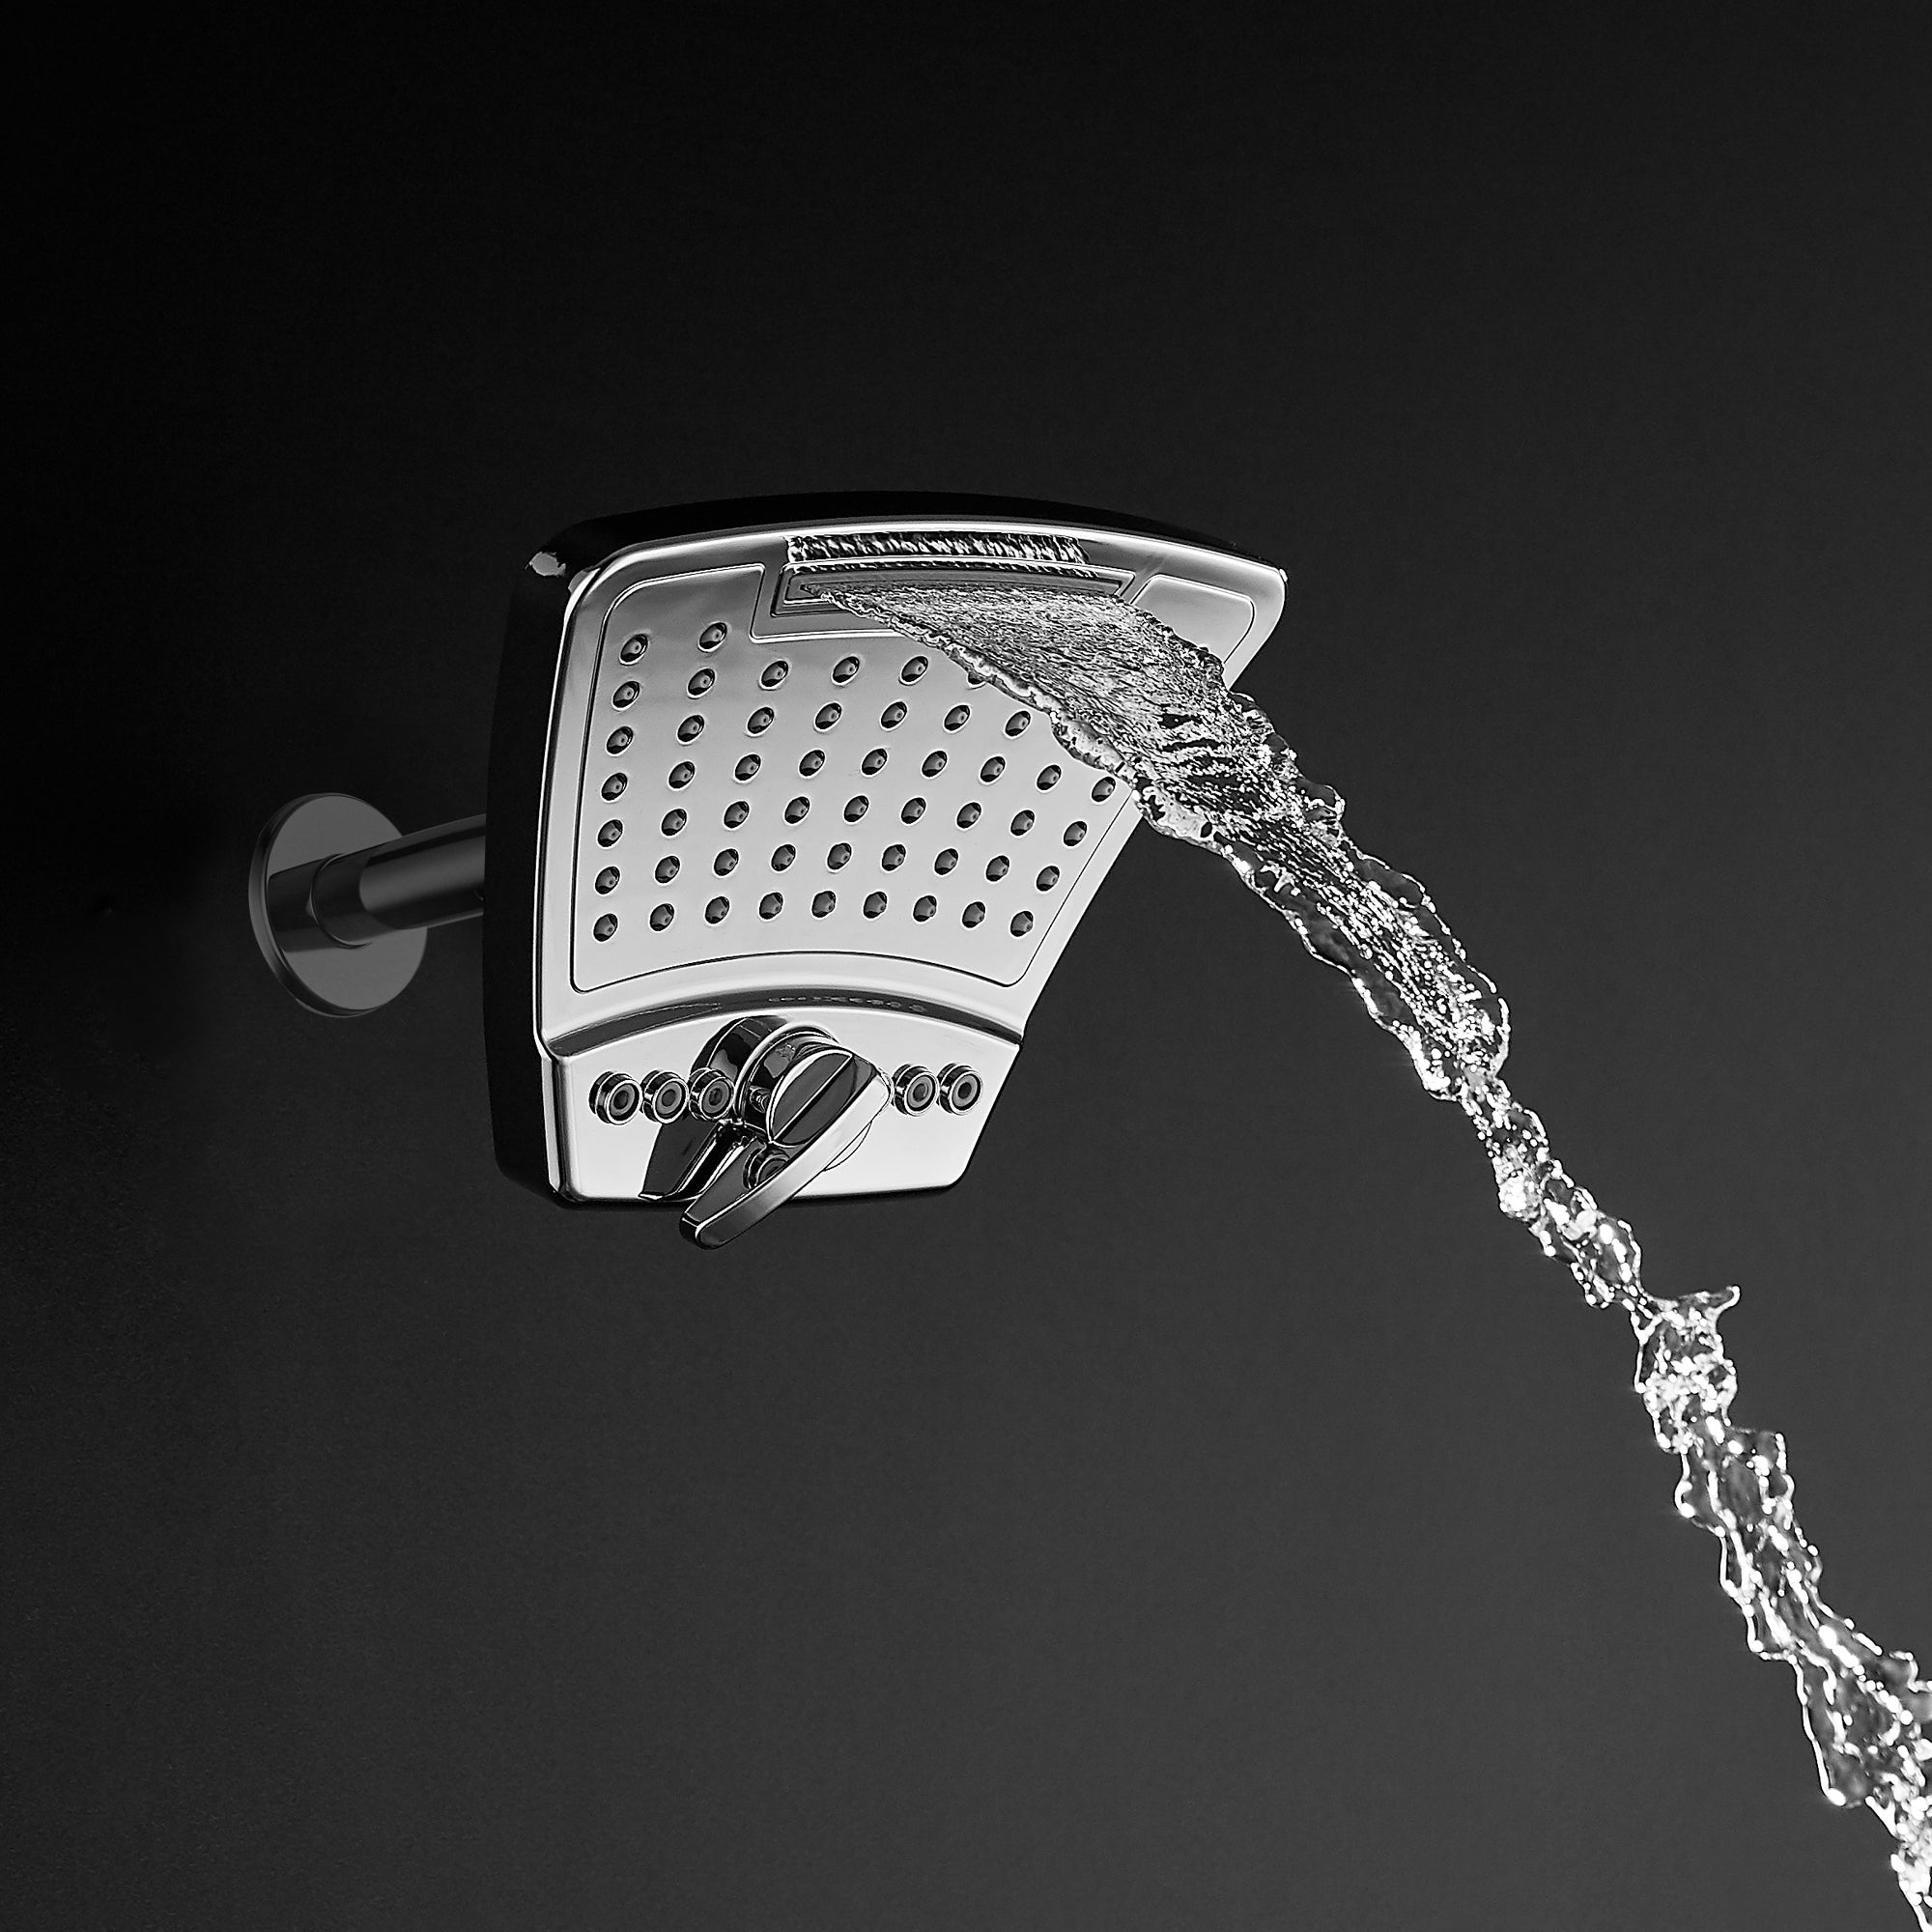 PULSE ShowerSpas Brushed Nickel Showerhead - PowerShot Showerhead